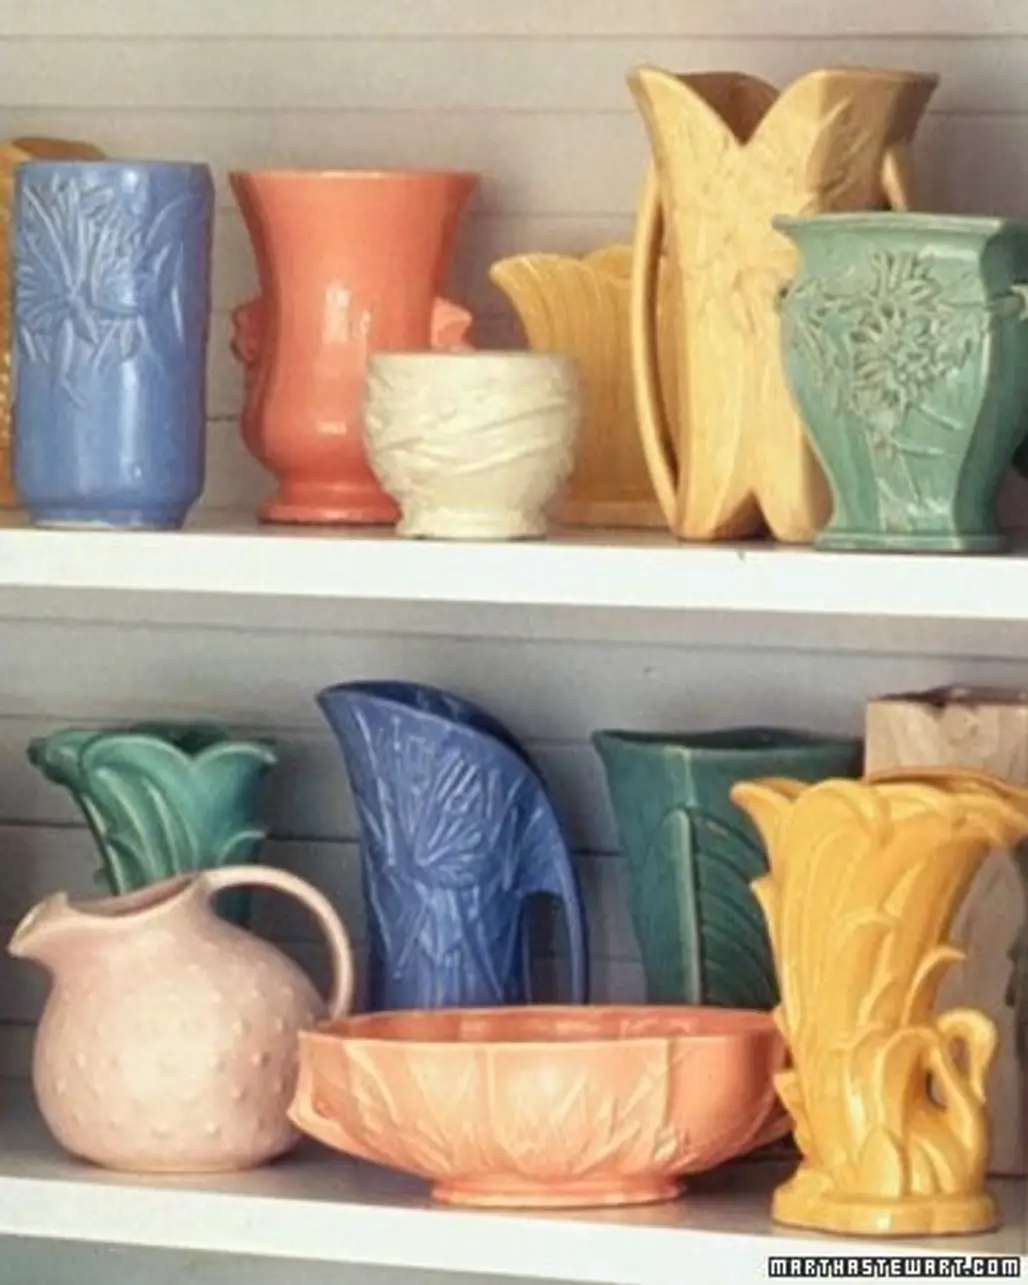 Shelves of Vases